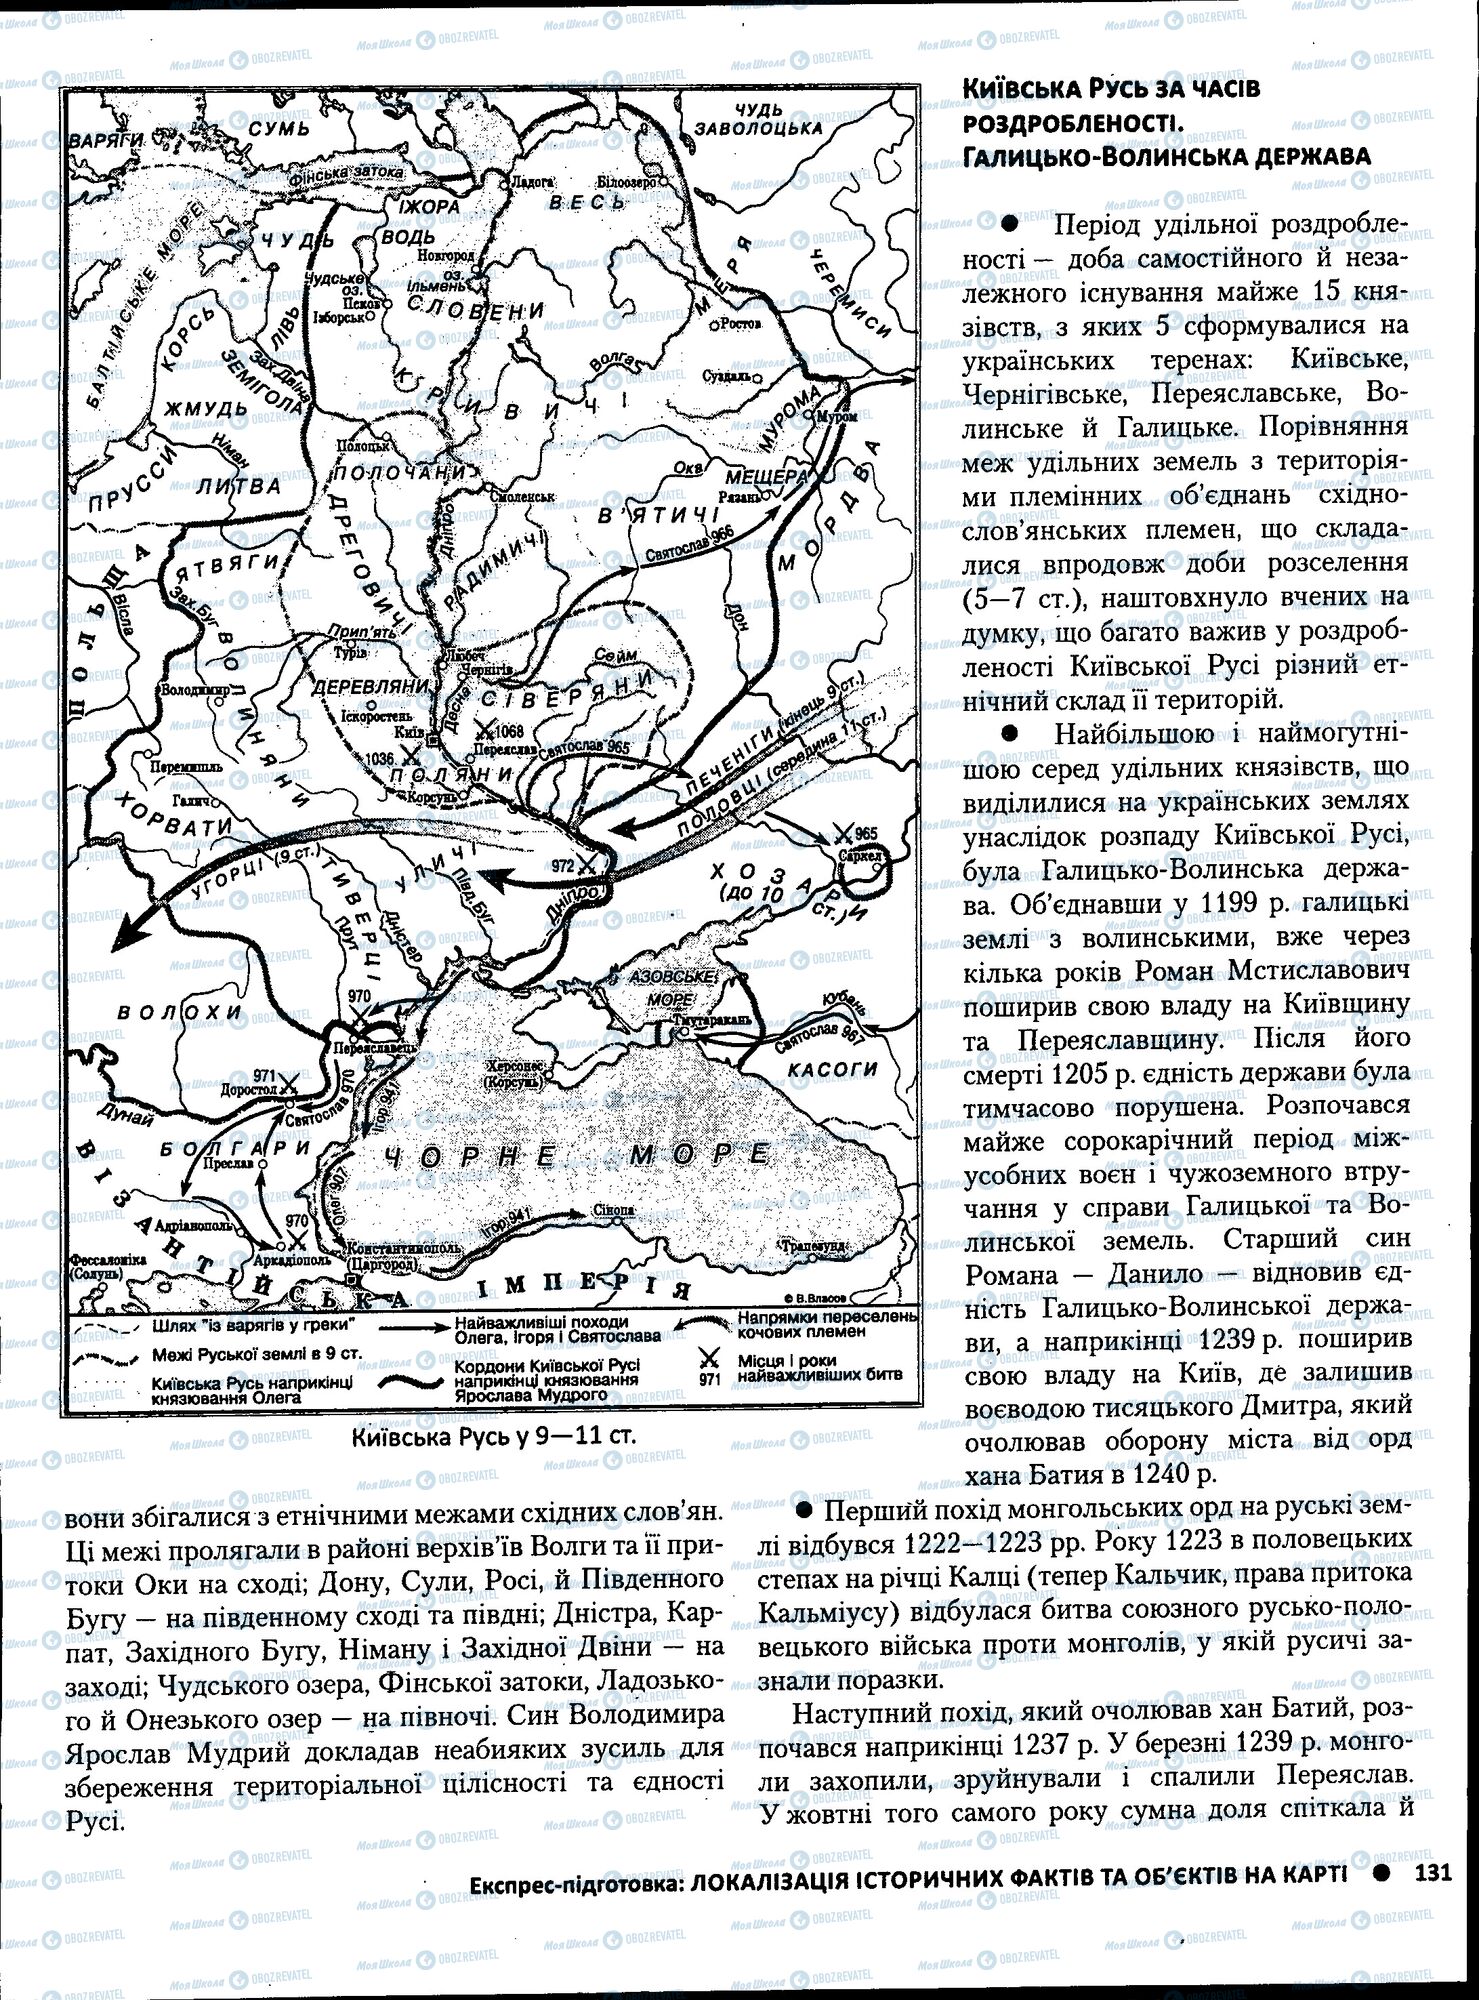 ЗНО История Украины 11 класс страница 131